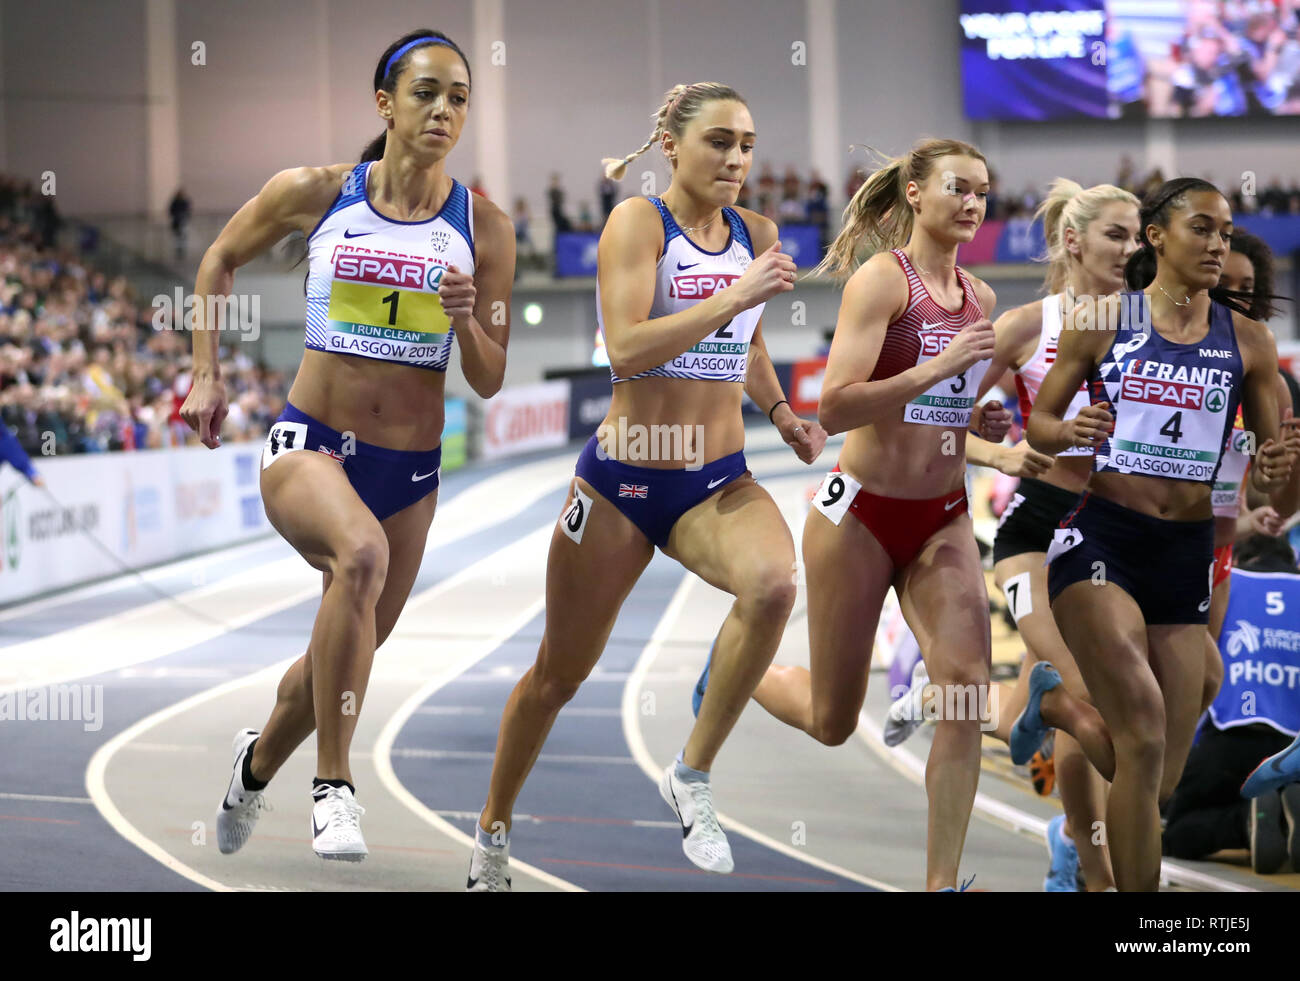 Gran Bretagna Katarina Johnson-Thompson (sinistra) nel pentathlon Donne 800m durante il giorno uno degli Europei Indoor di Atletica a Emirates Arena, Glasgow. Foto Stock